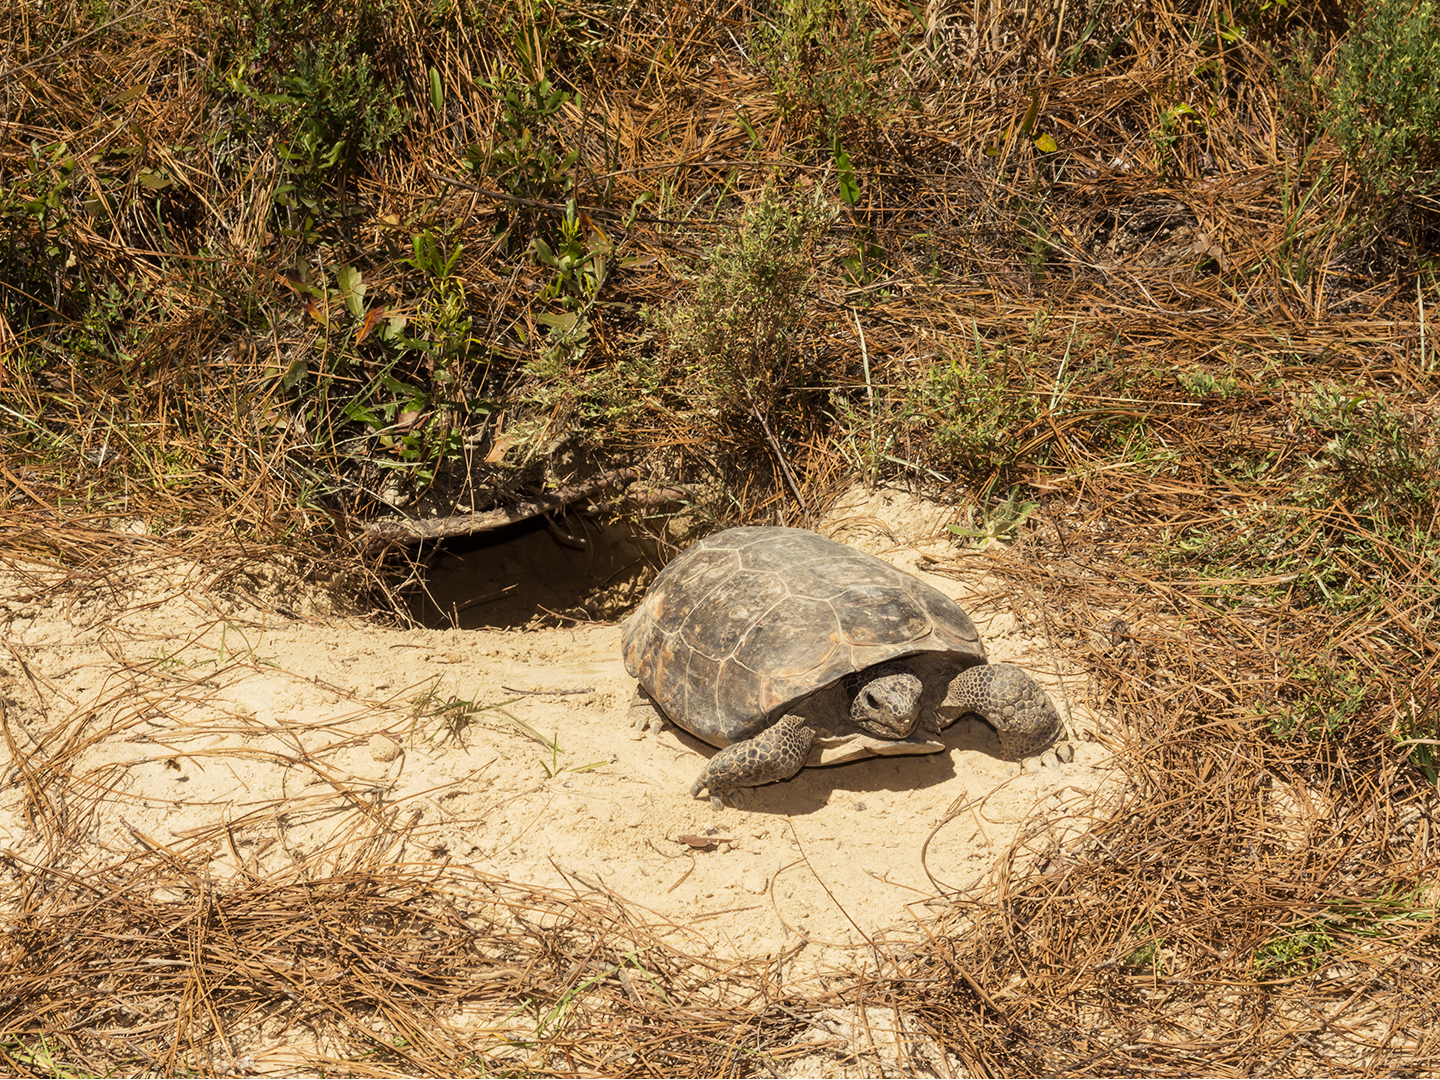 Biodiversity conservation efforts help gopher tortoise